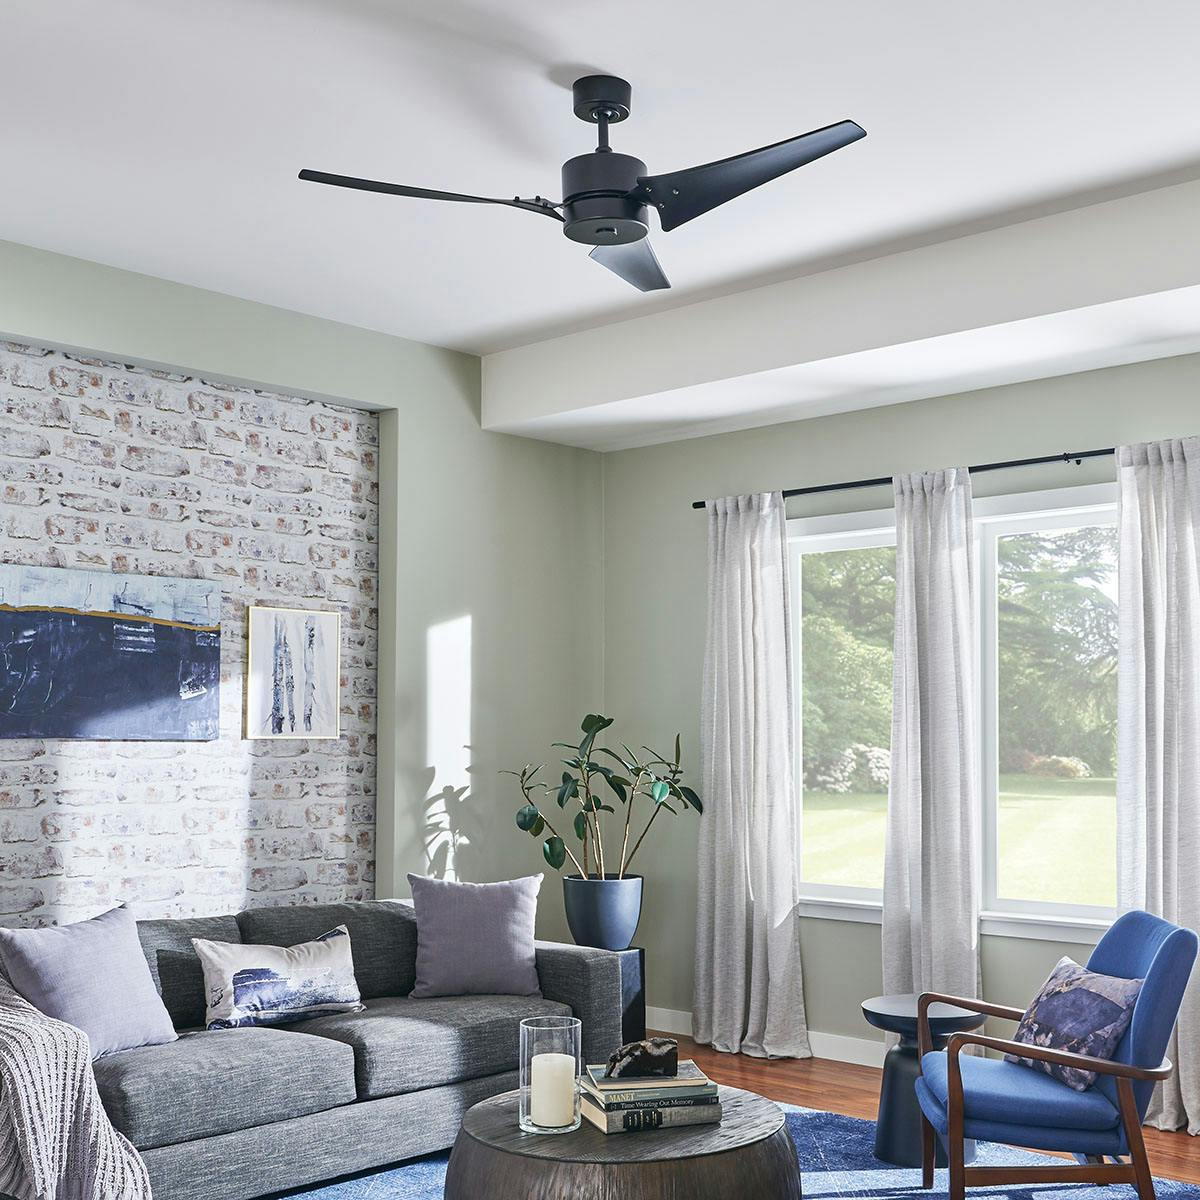 Living room featuring Motu ceiling fan 33001SBK